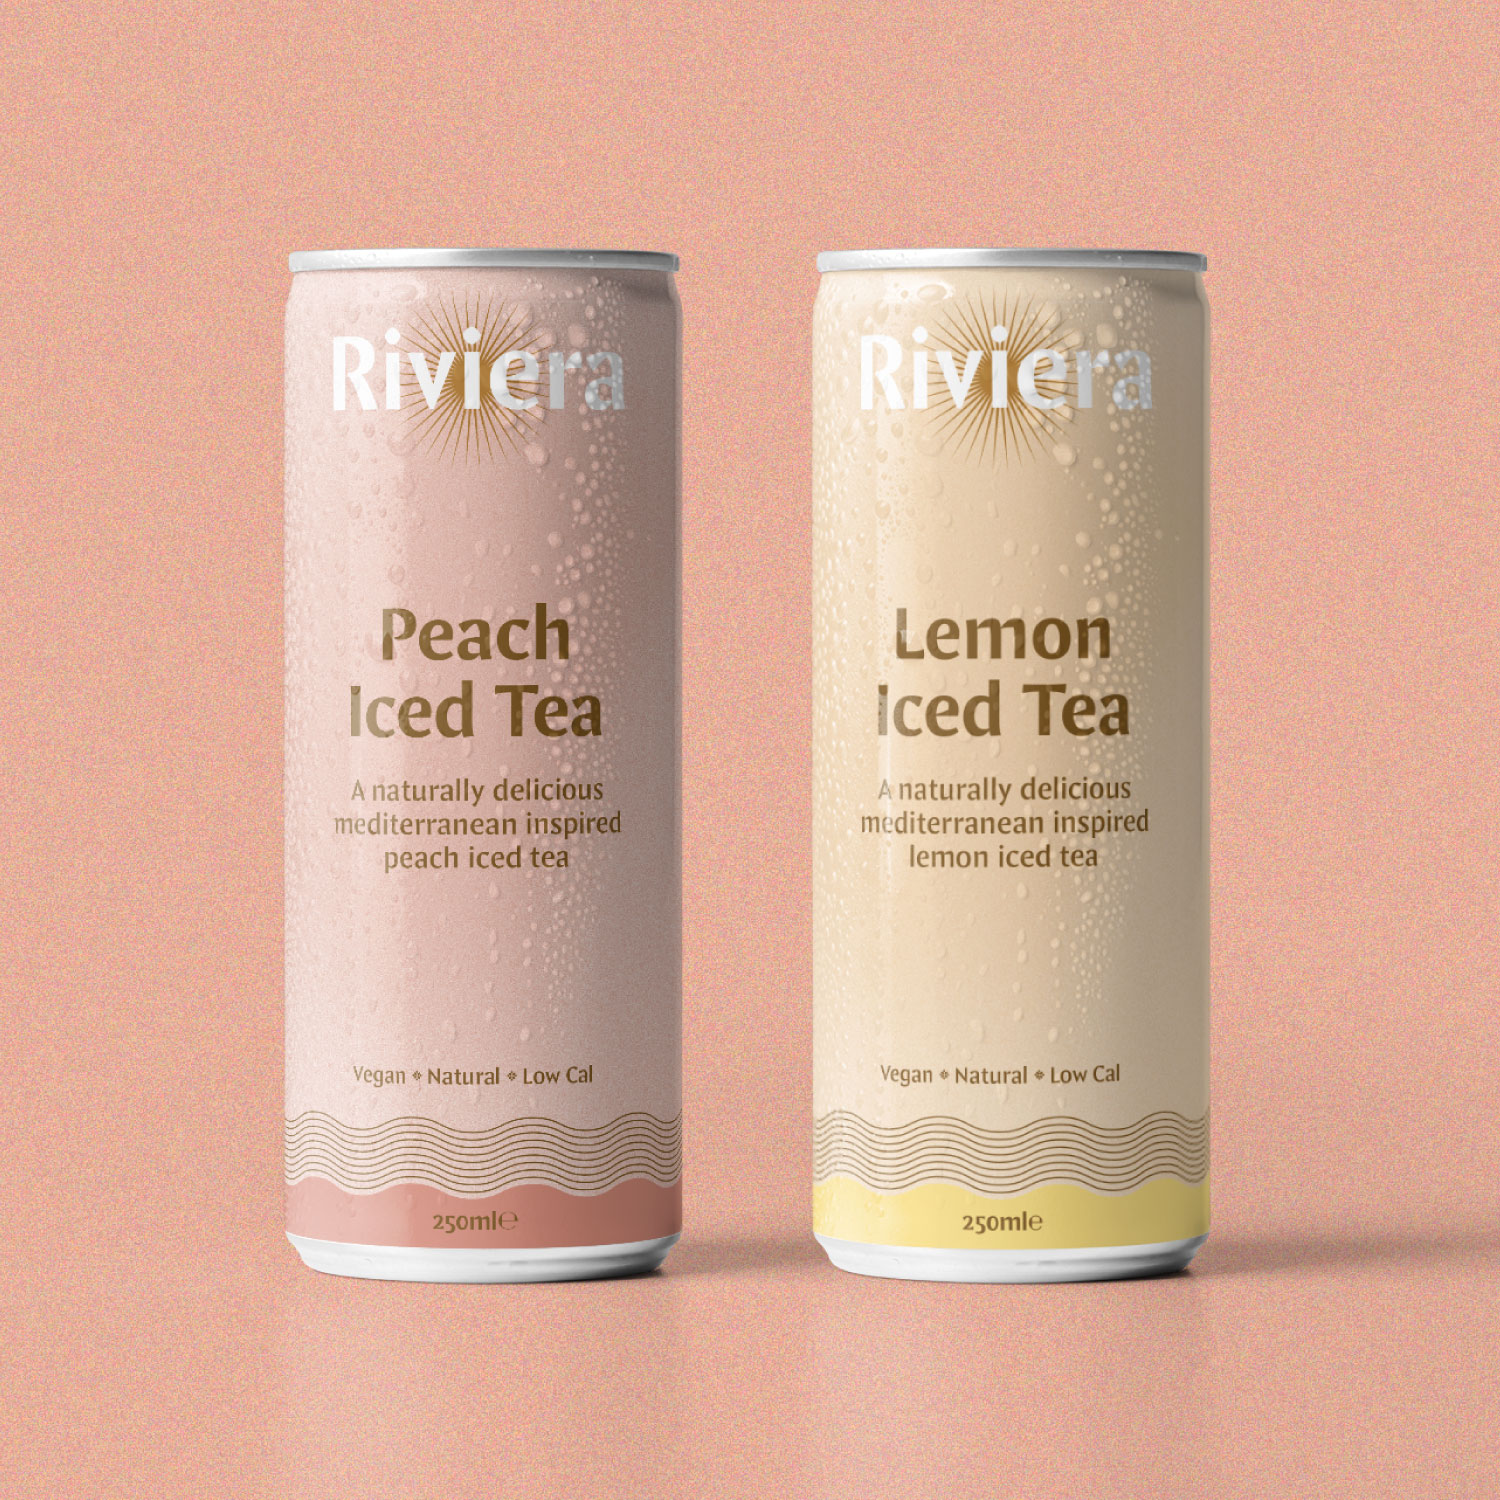 Iced tea drinks branding packaging